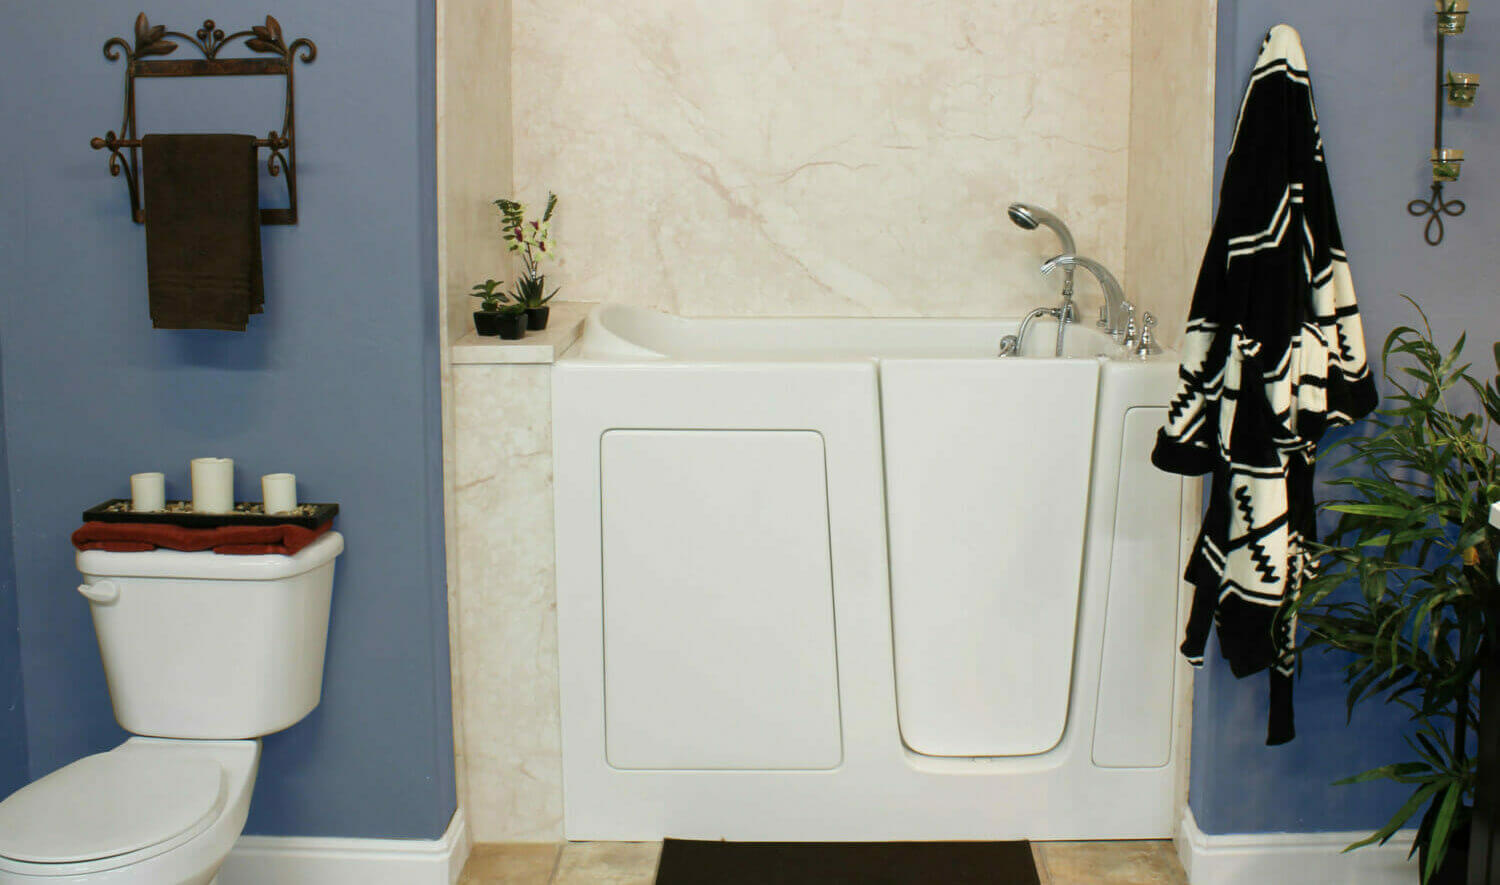 Five Star Bath Solutions of Annapolis Walk-in Bathtub Installation